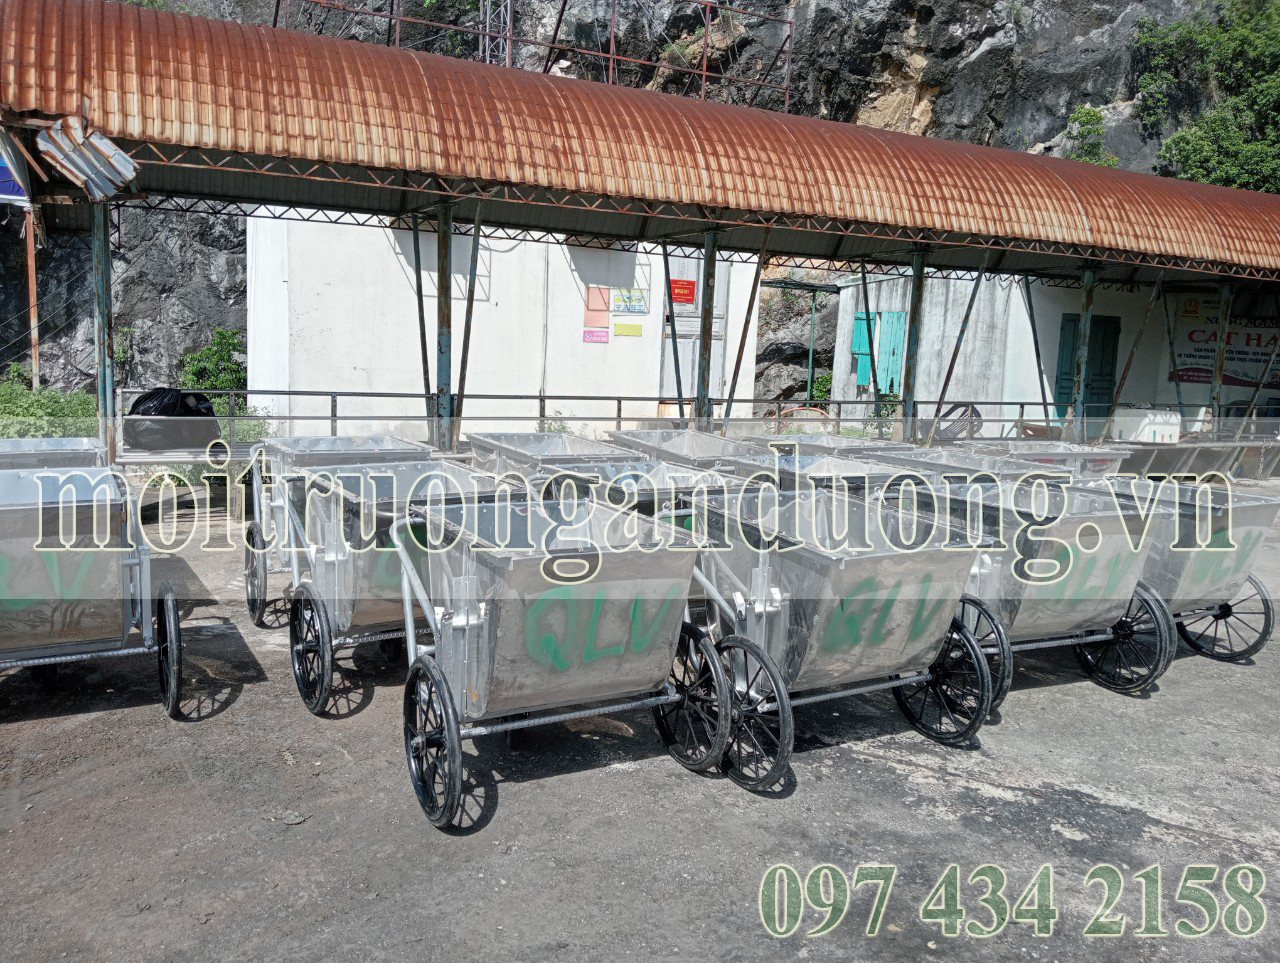 Bàn giao và lắp đặt xe gom rác inox 400 lít tại Đảo Cát Bà